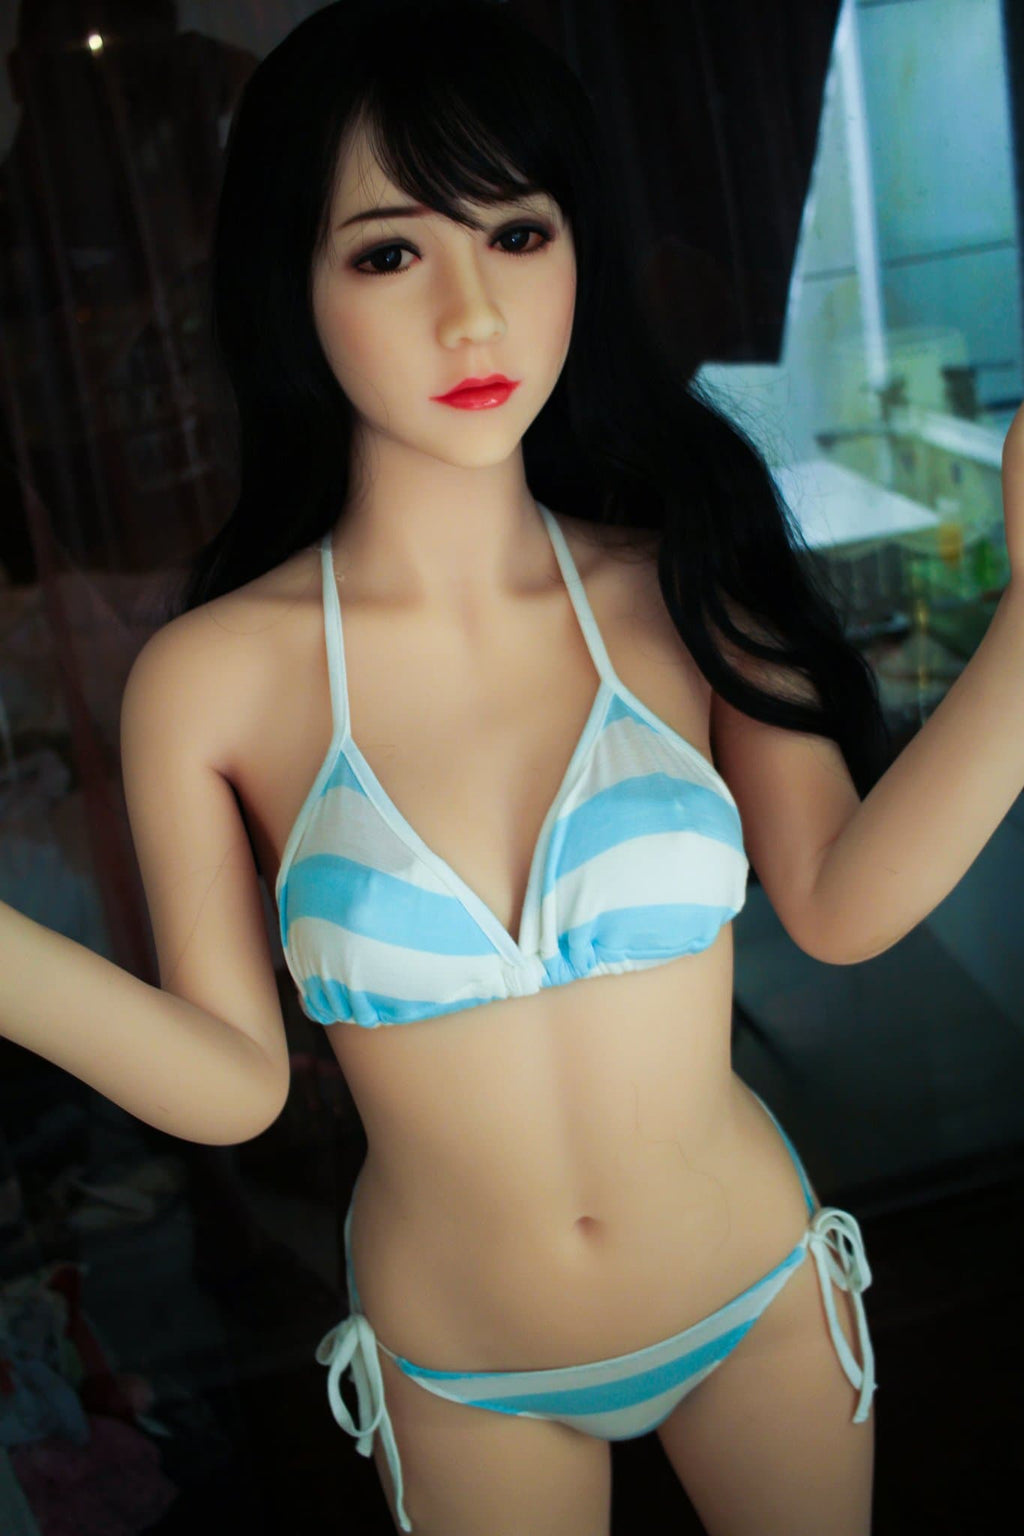 ilene 153cm black hair japanese skinny flat chested tpe wm asian sex doll